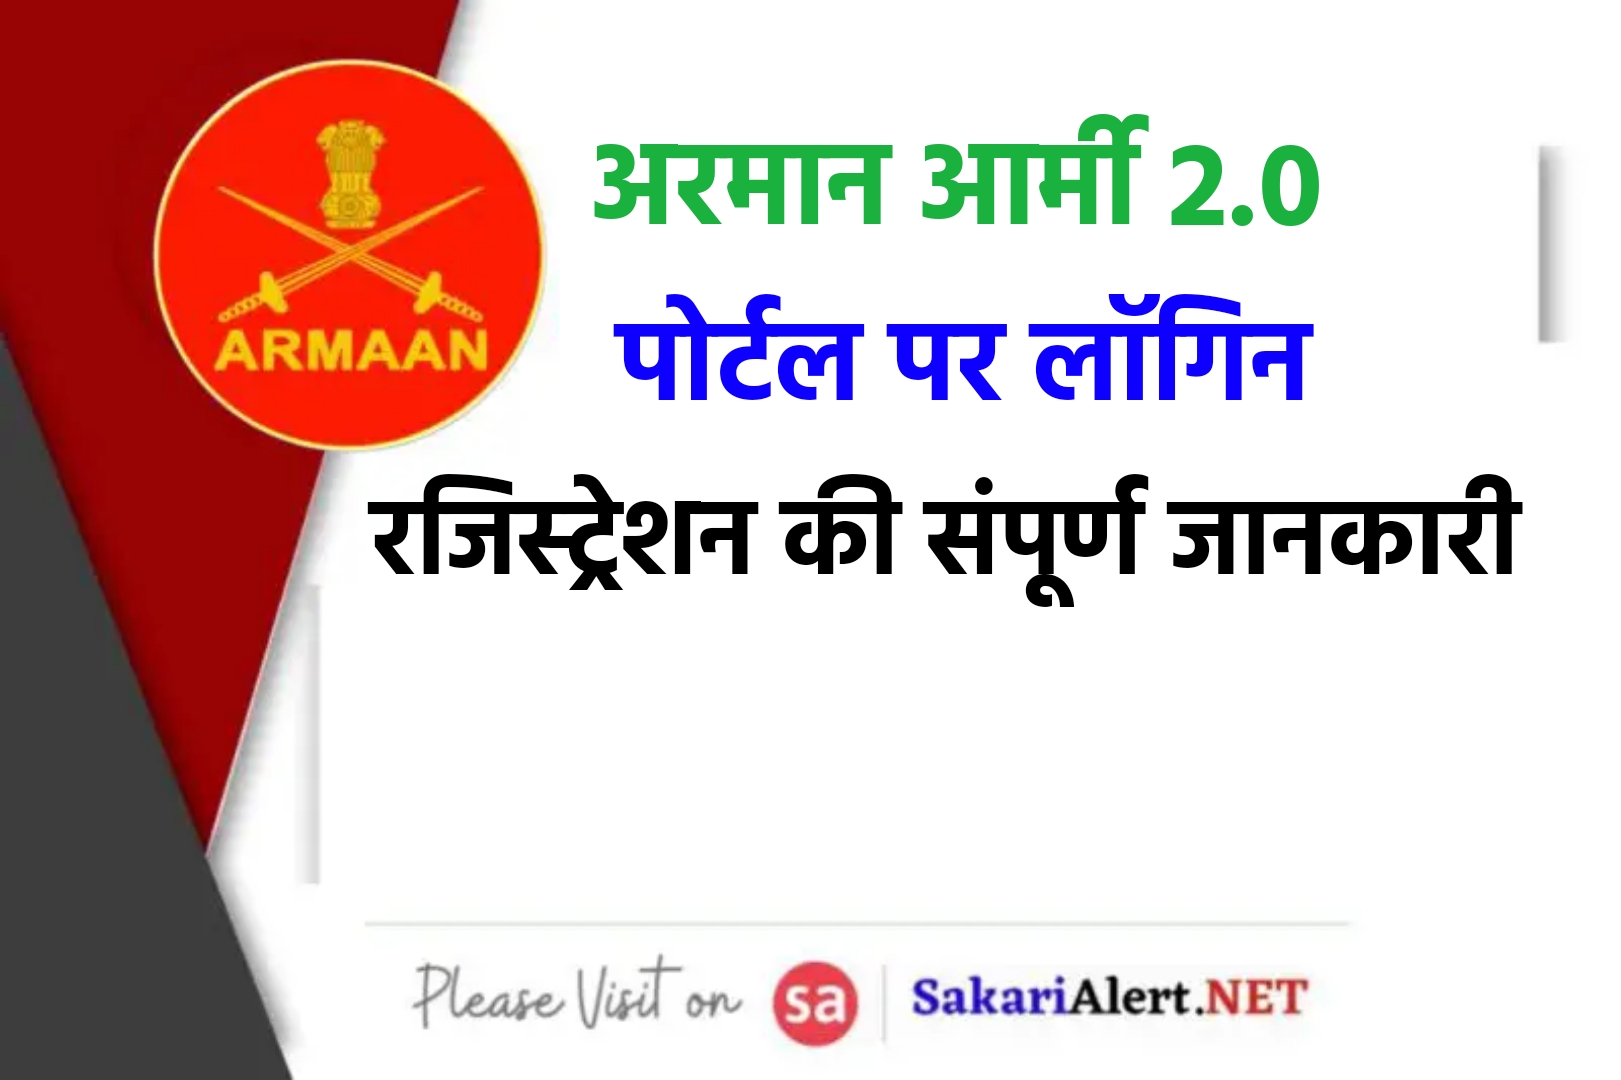 ARMAAN 2.0 - अरमान इंडियन आर्मी पोर्टल पर लॉग इन कैसे करें?